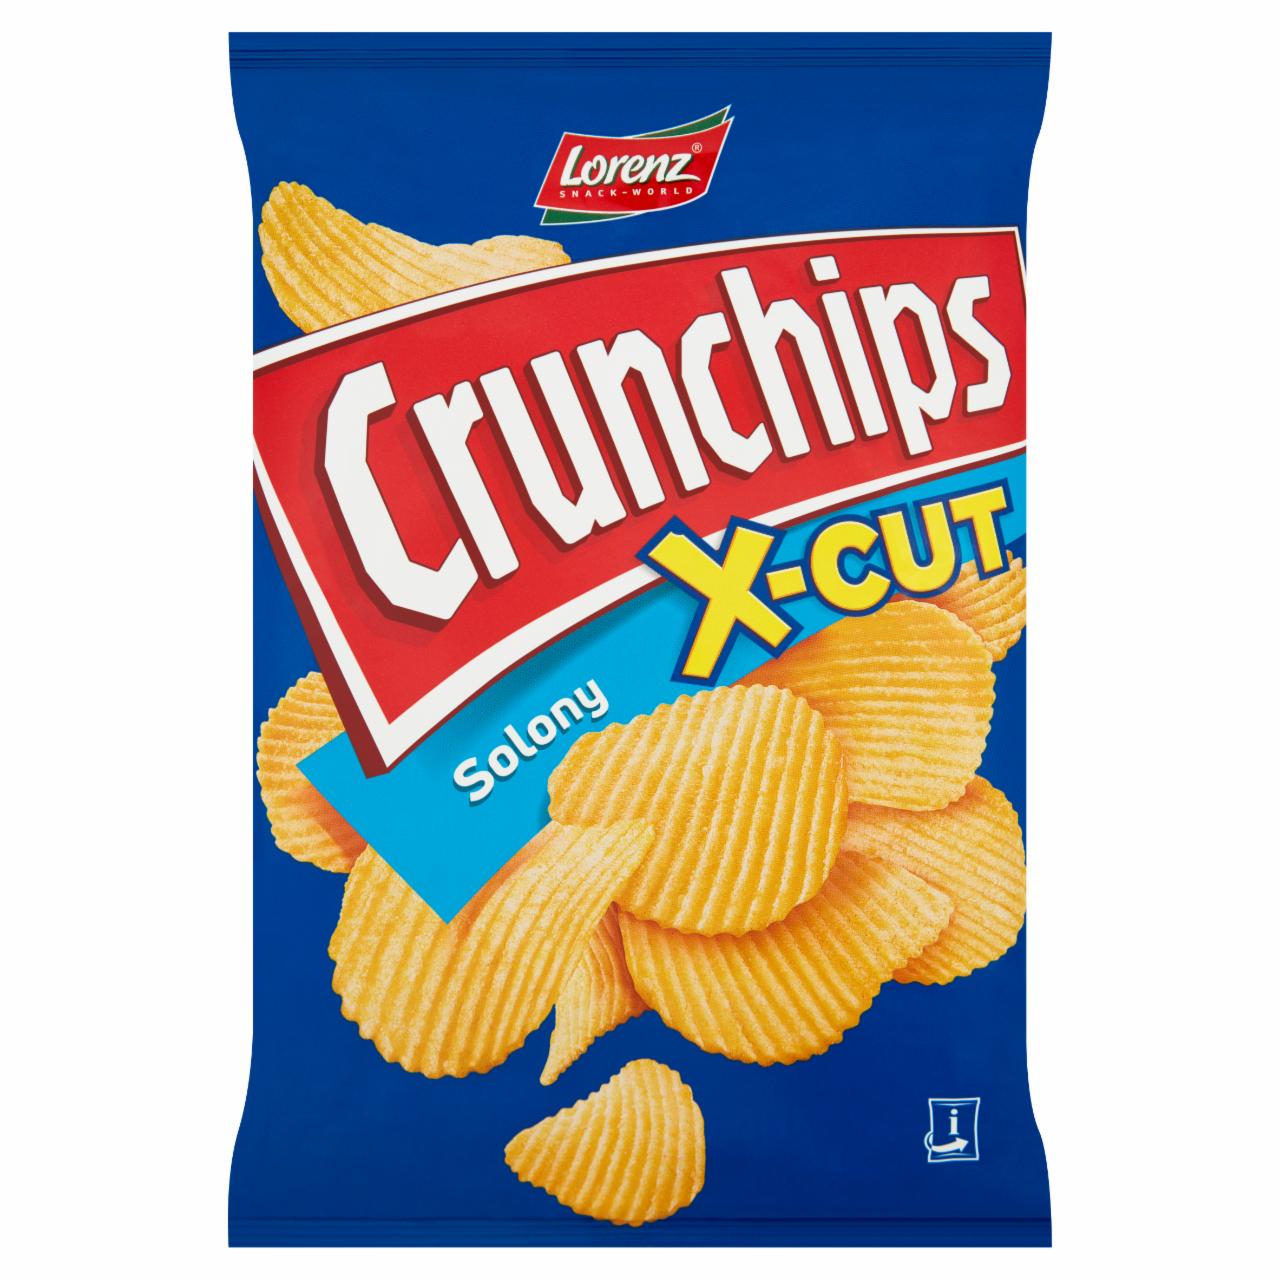 Zdjęcia - X-Cut Chipsy ziemniaczane solony Crunchips